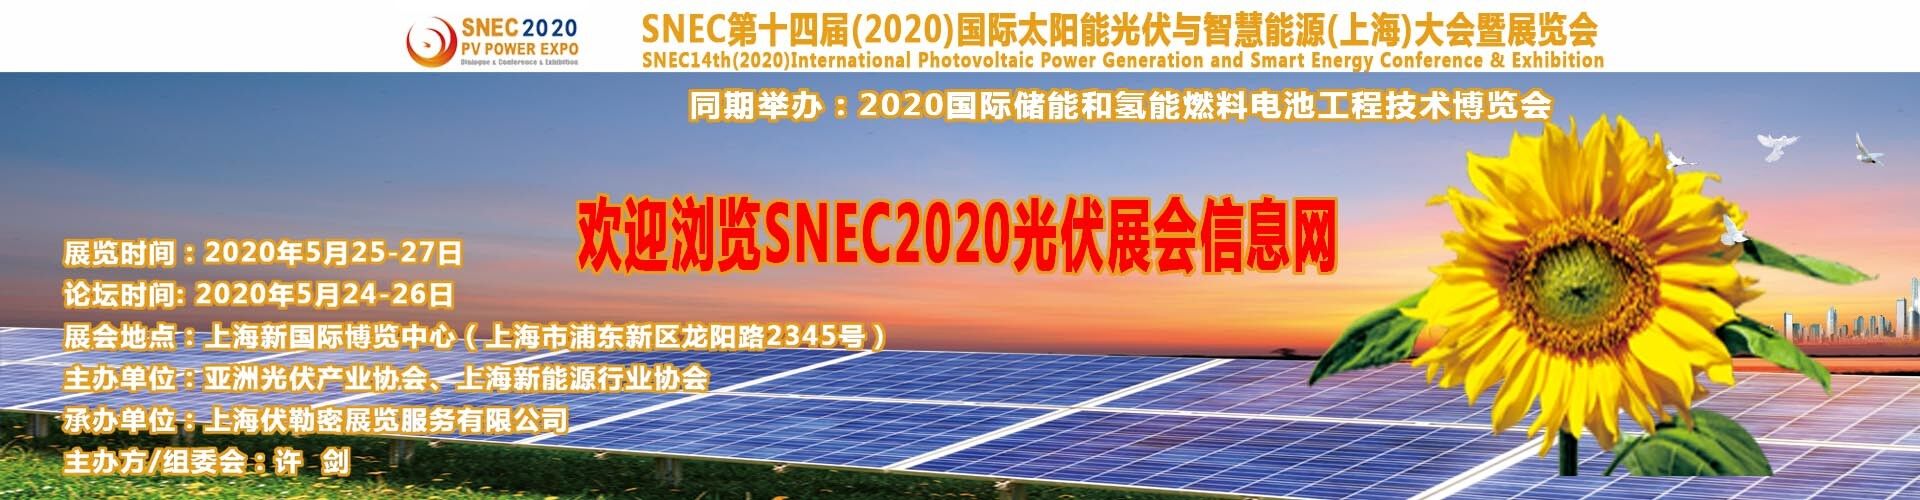 2018美國太陽能光伏公司參加SNEC展